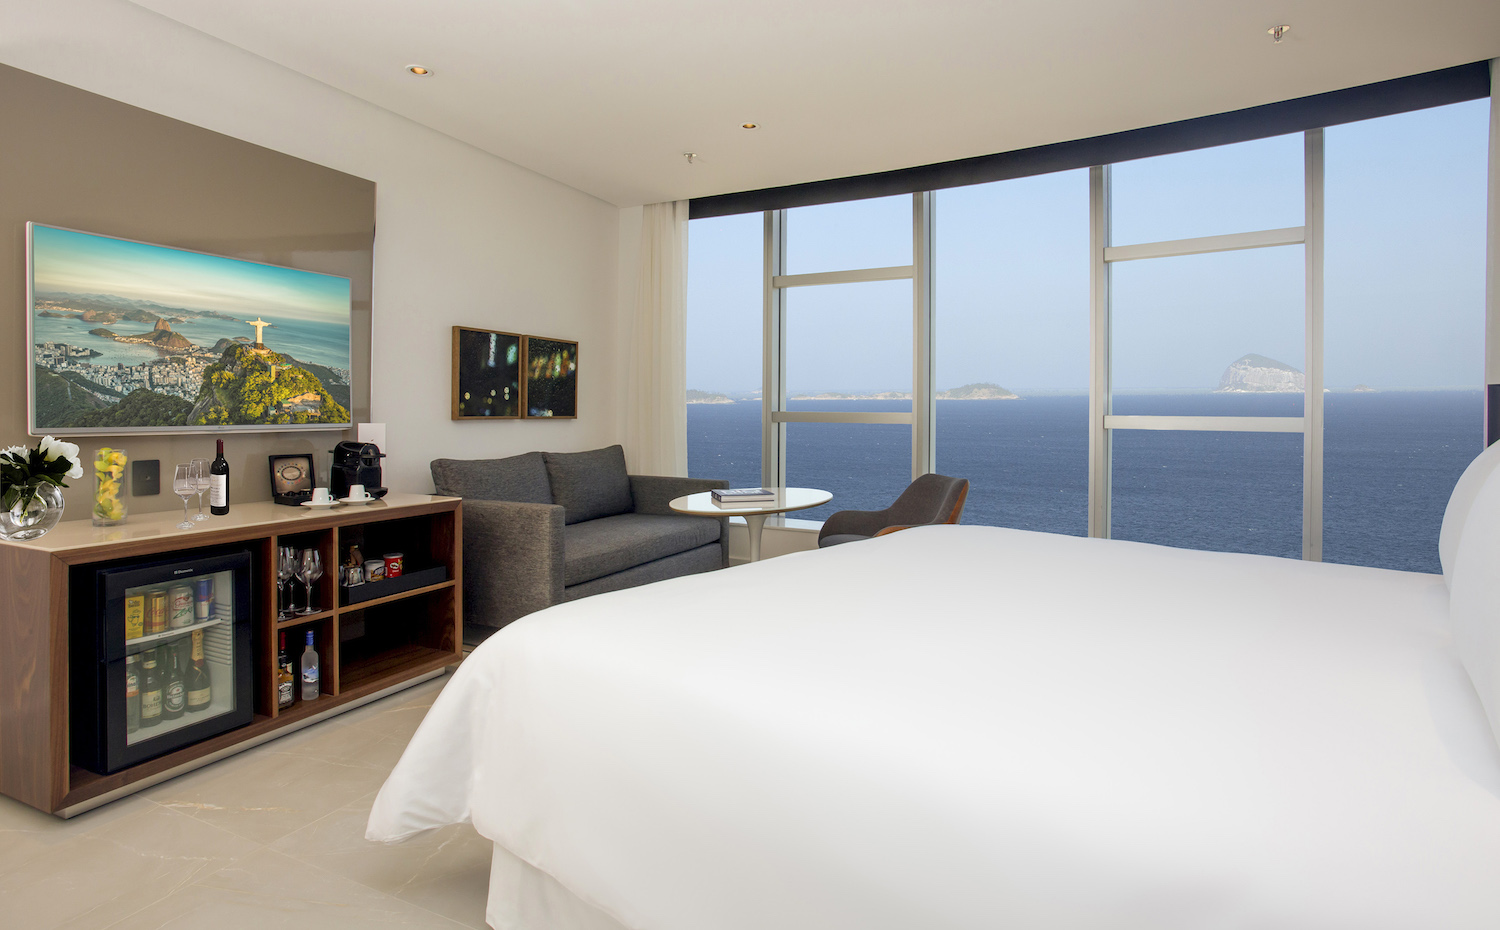 Las habitaciones del hotel Nacional de Rio de Janeiro de Niemeyer se benefician de espectaculares vistas al mar